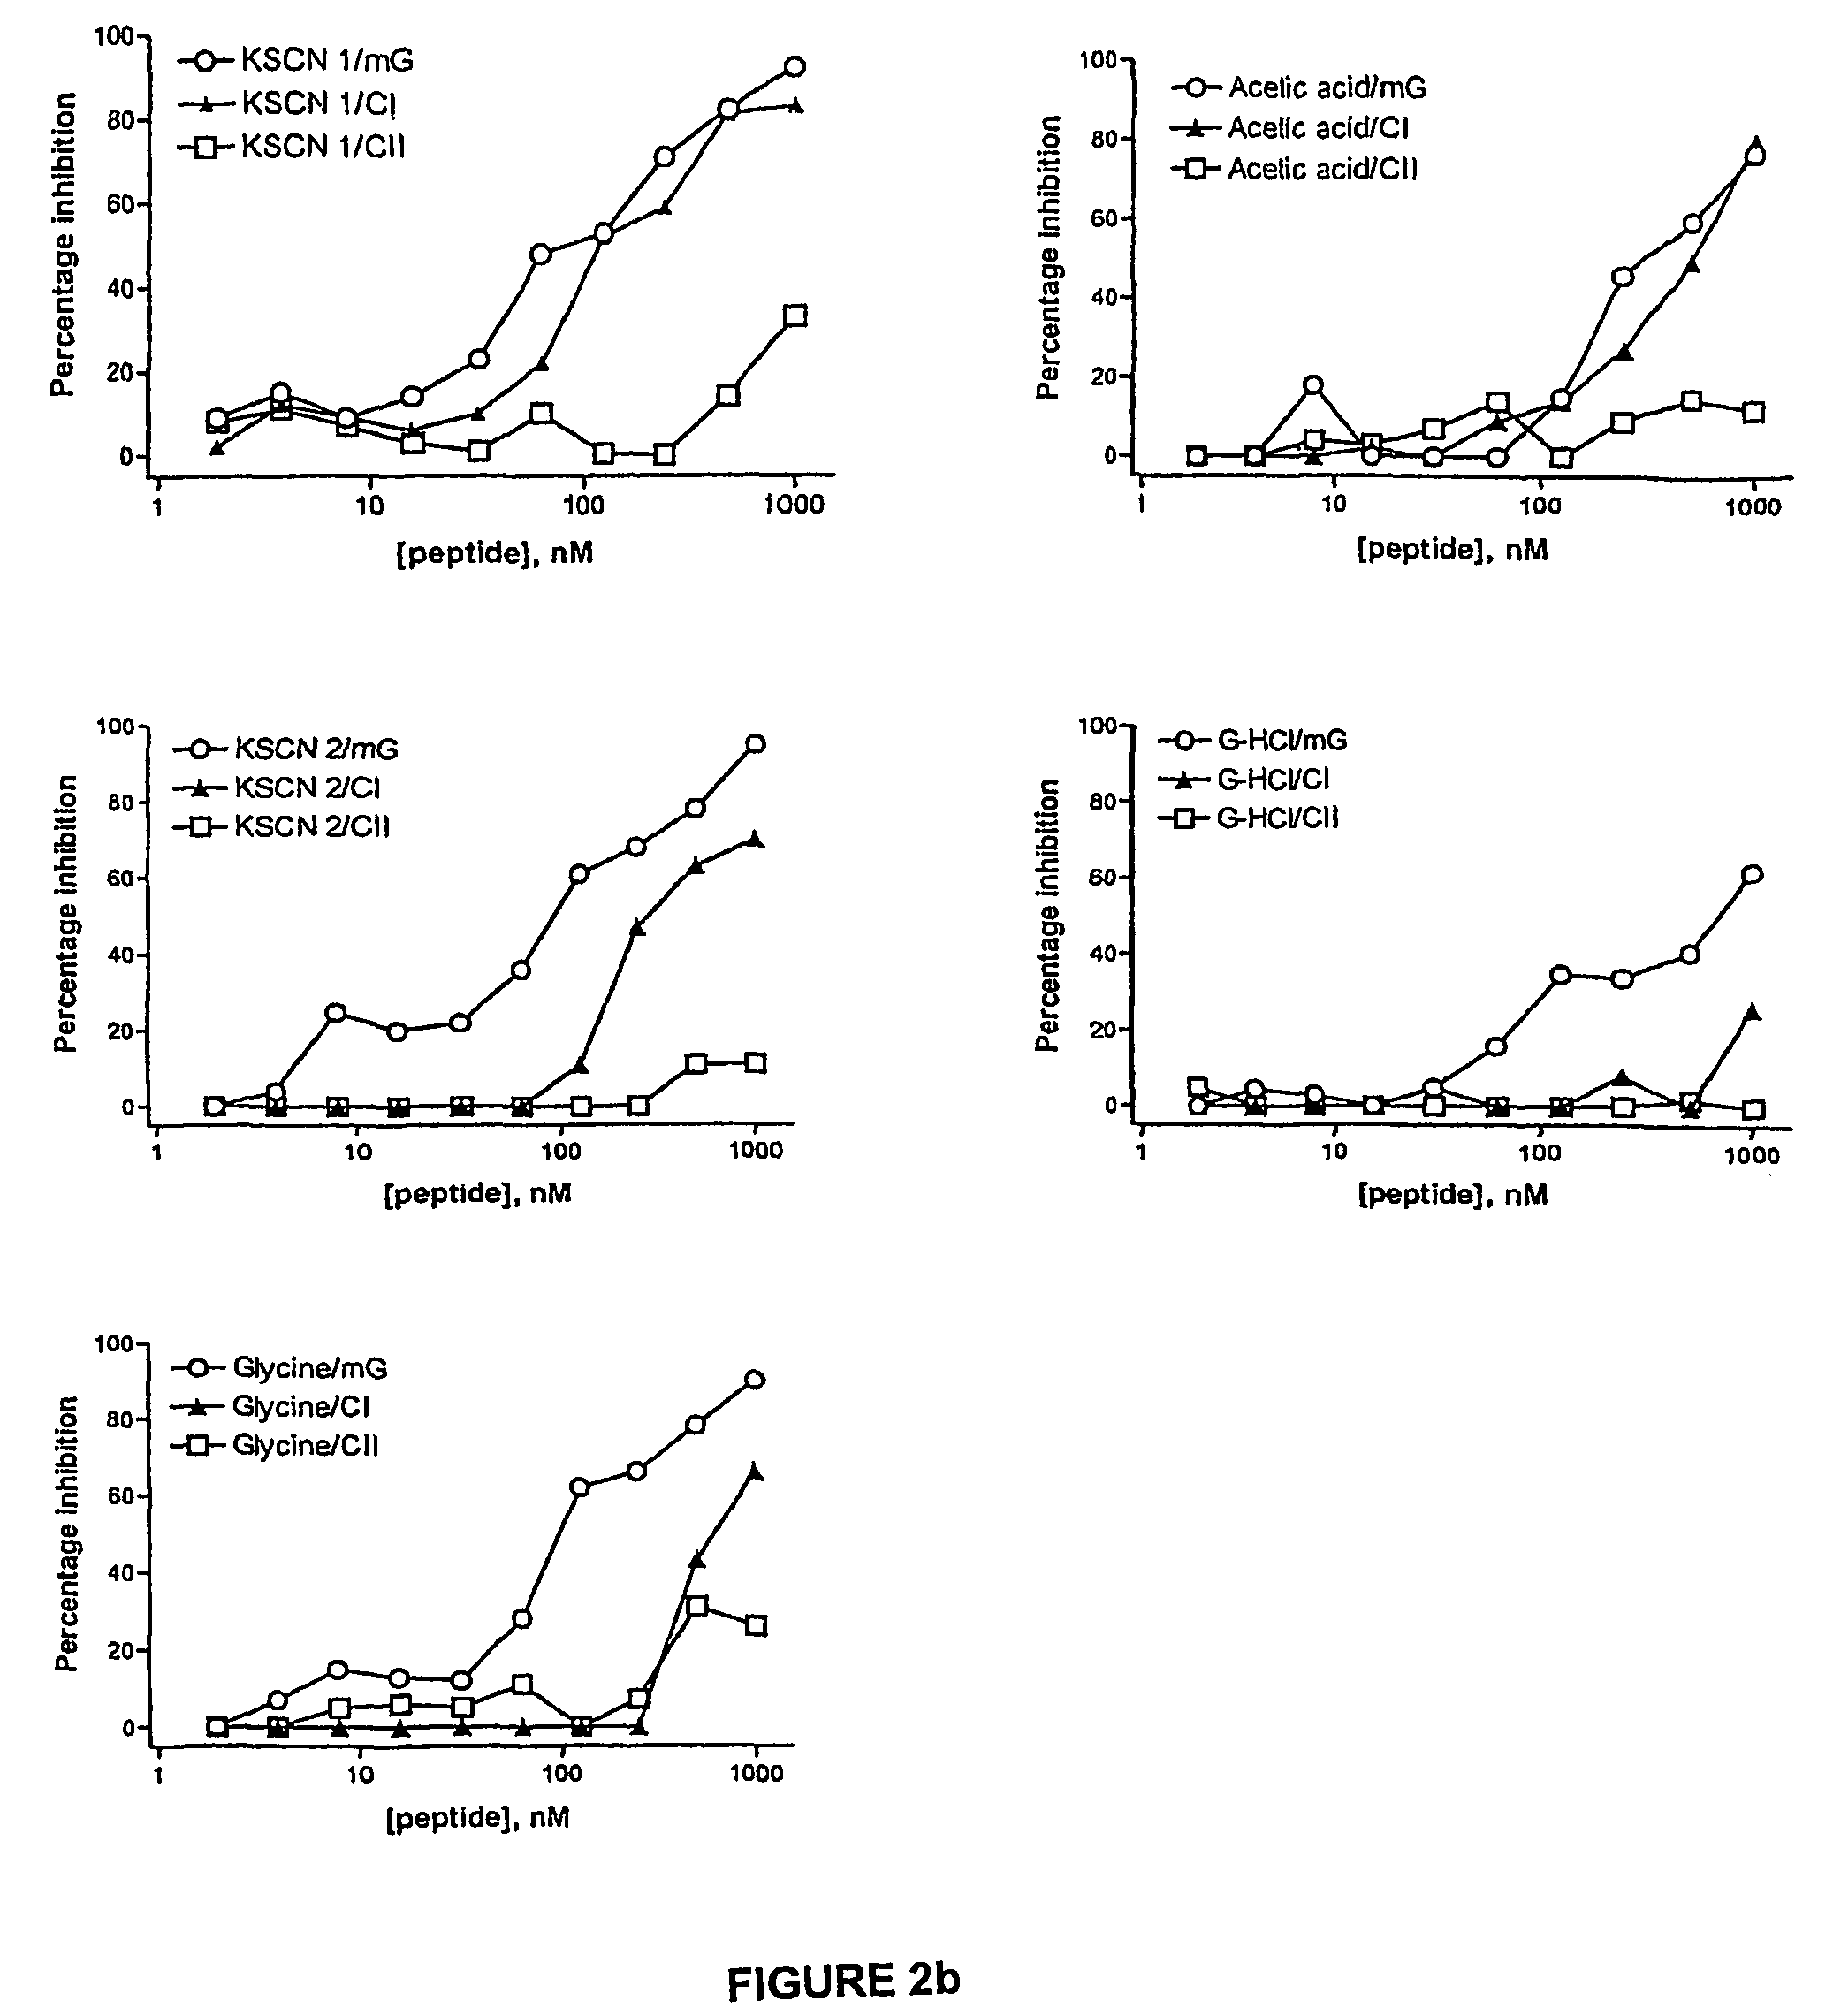 Retro-inverso gonadotropin-releasing hormone peptide and vaccine composition